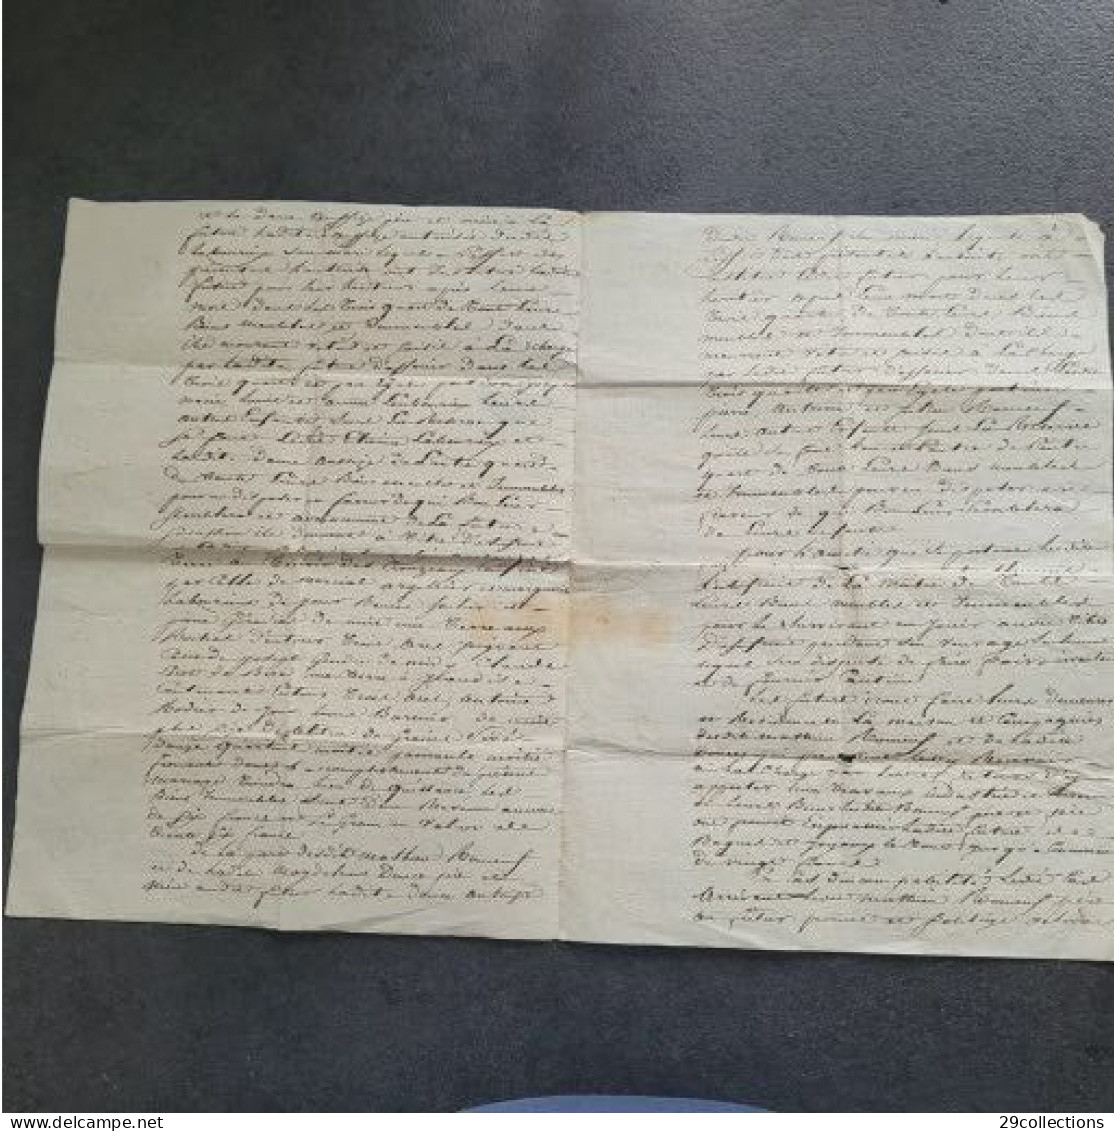 Acte 1813 mariage avec mention manuscrite rare "Pour Expédition" (par la Poste)